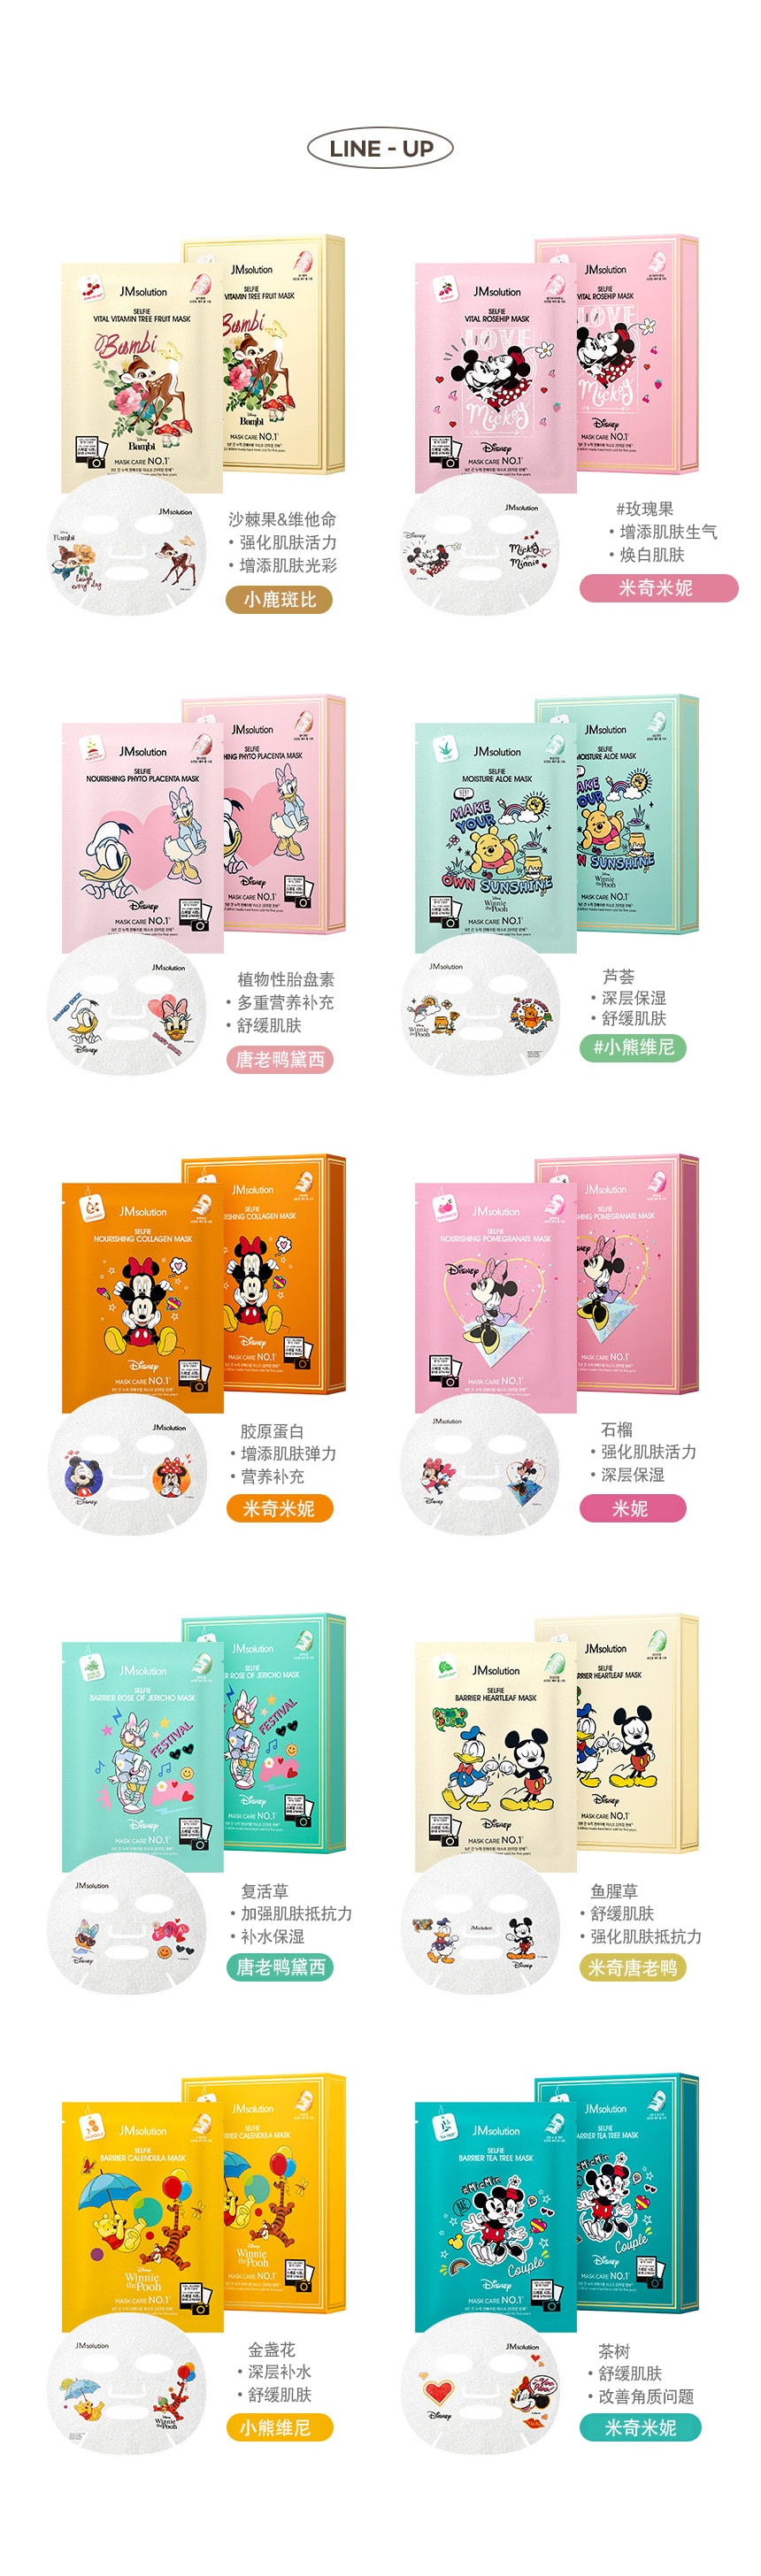 韩国 JMsolution 【迪士尼聯名款】限量卡通面膜系列  #米奇米妮-茶树 10片/ 1 盒